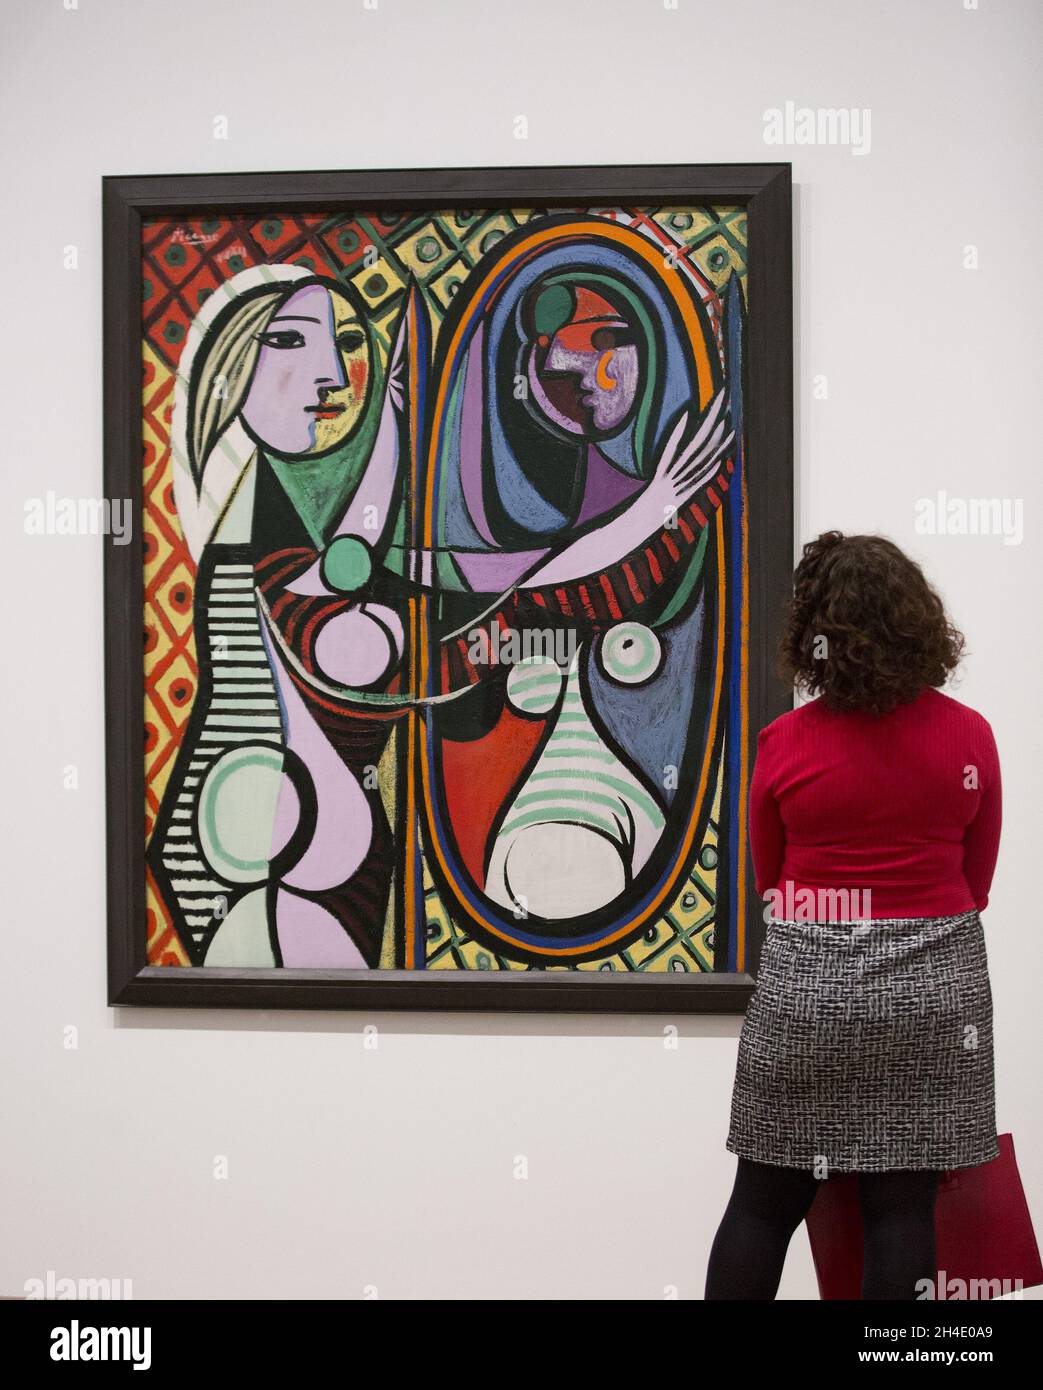 Una mujer mirando a la chica de Pablo Picasso antes de un espejo, de 1932  años, durante una vista previa de la exposición Picasso 1932 - Amor, fama,  tragedia en Tate Modern